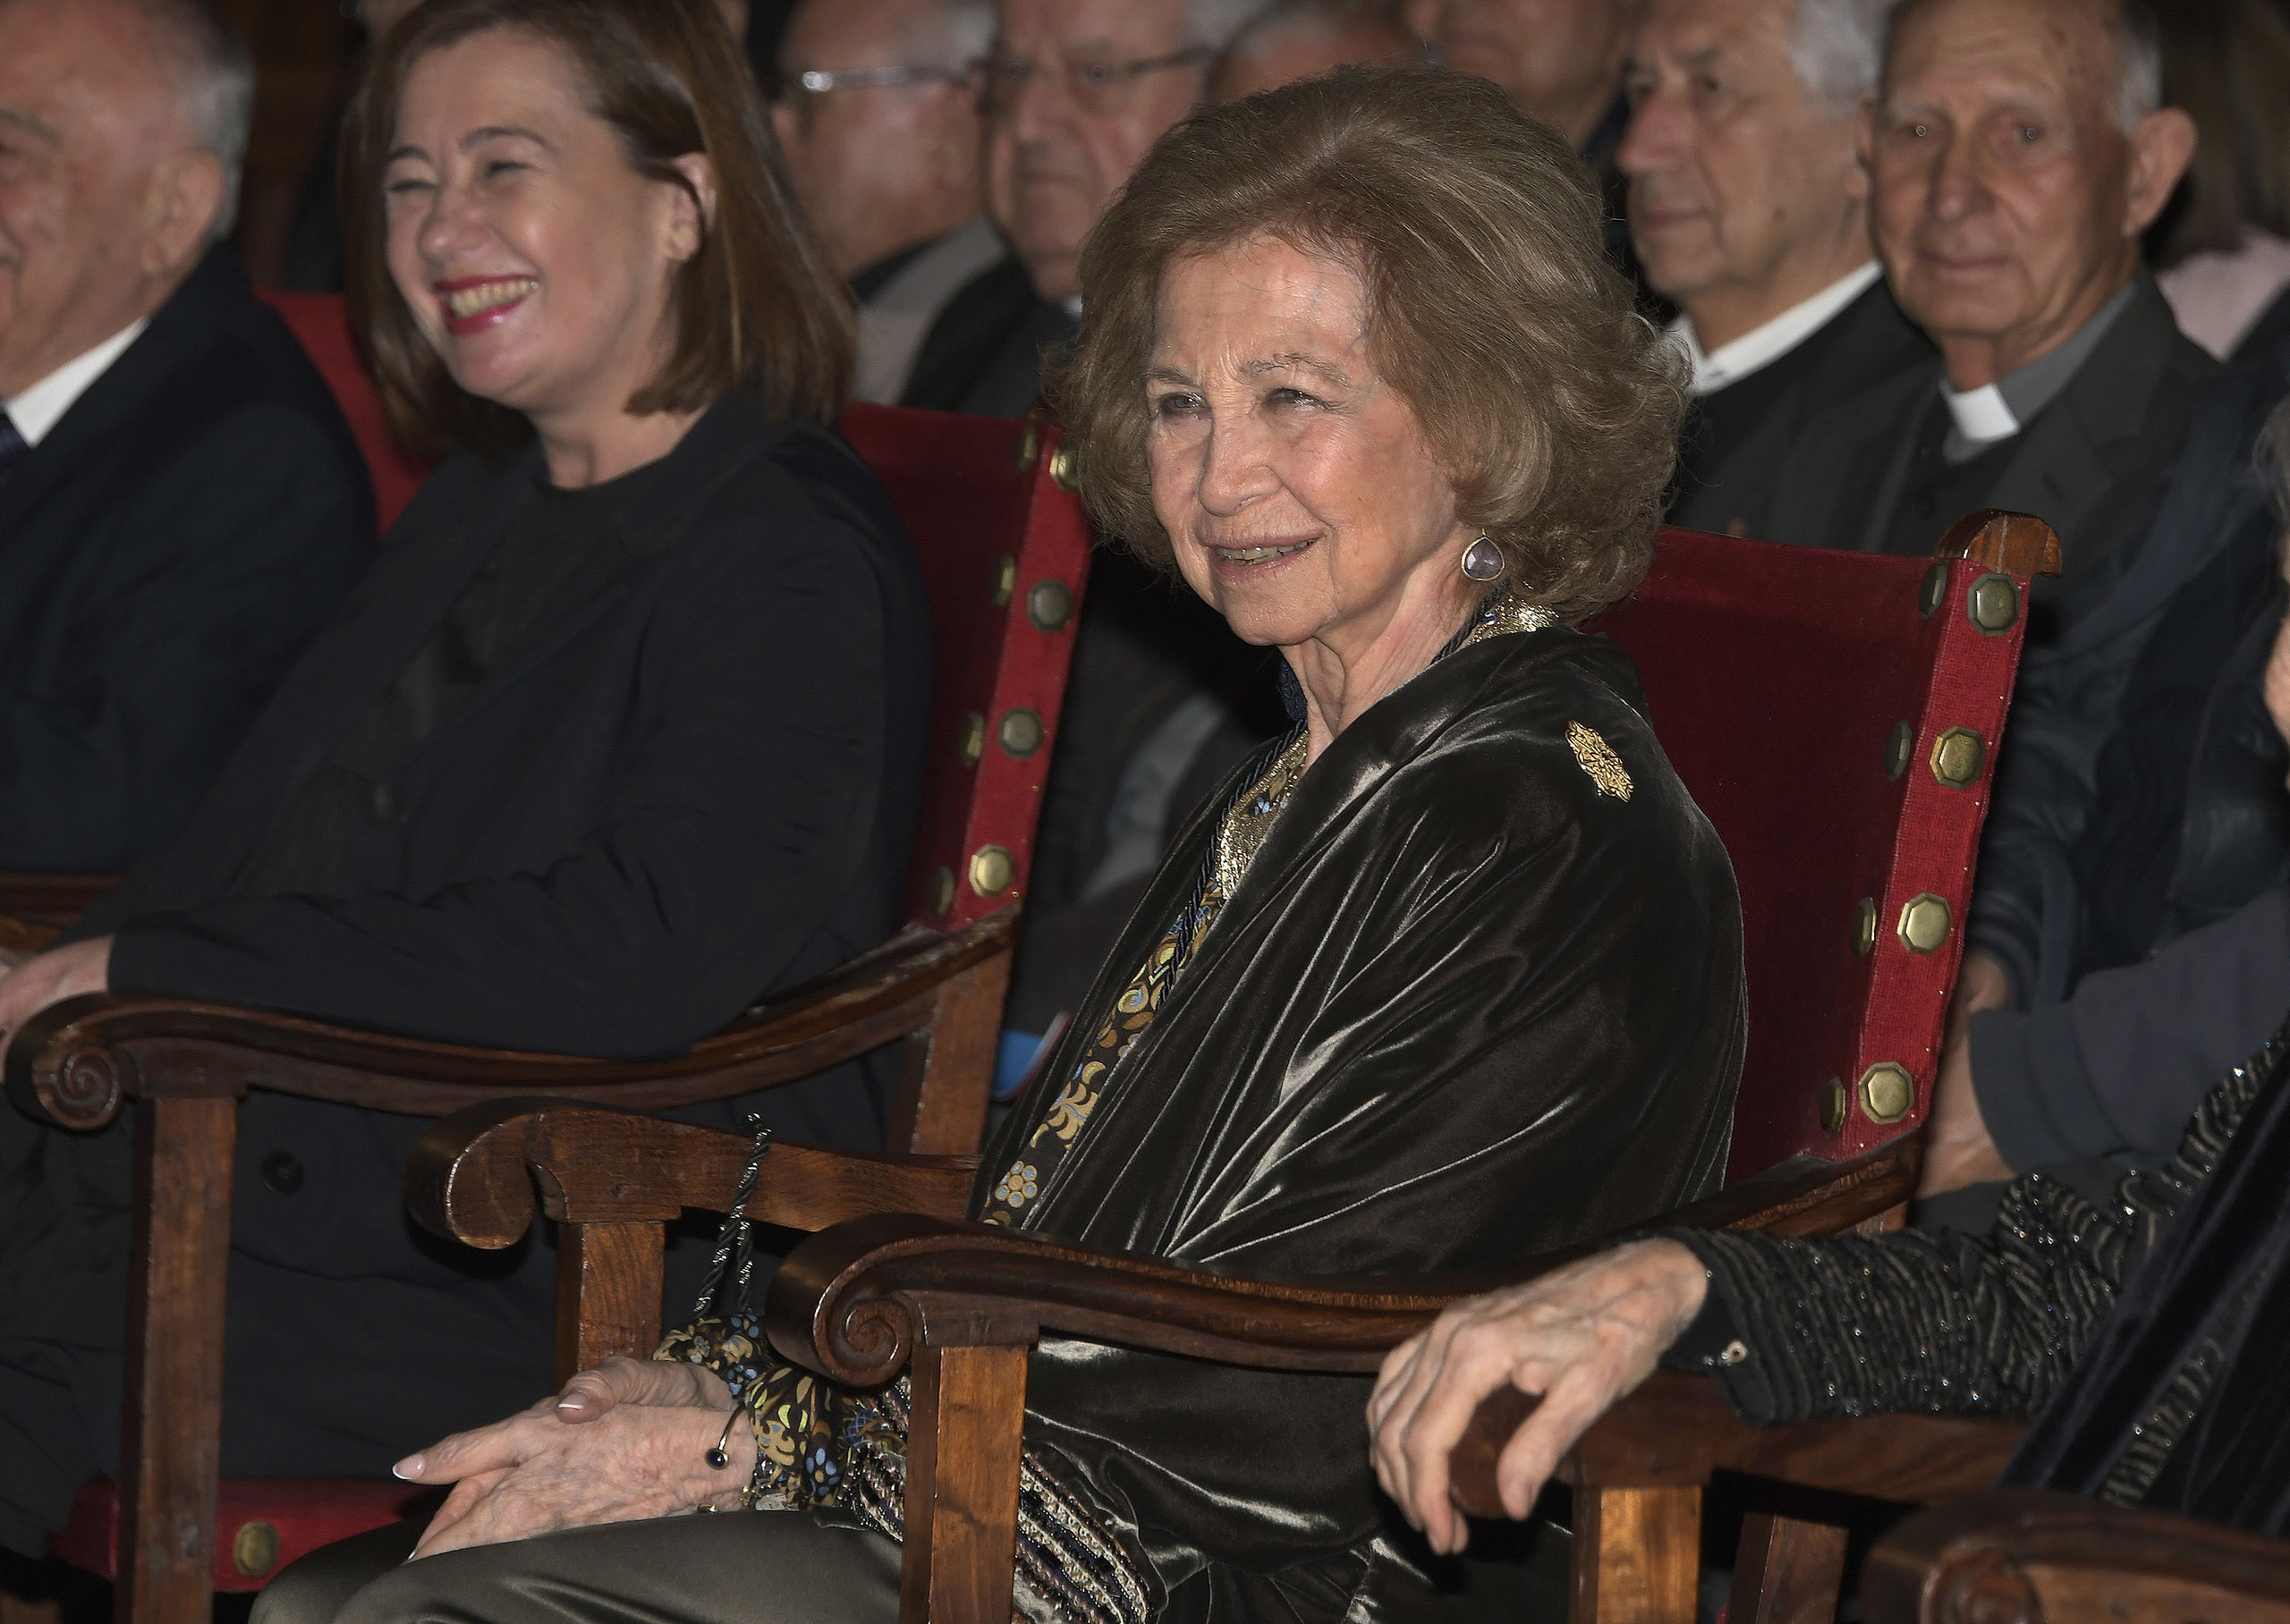 La reina Sofía, ingresada en la Clínica Ruber con evolución "favorable"